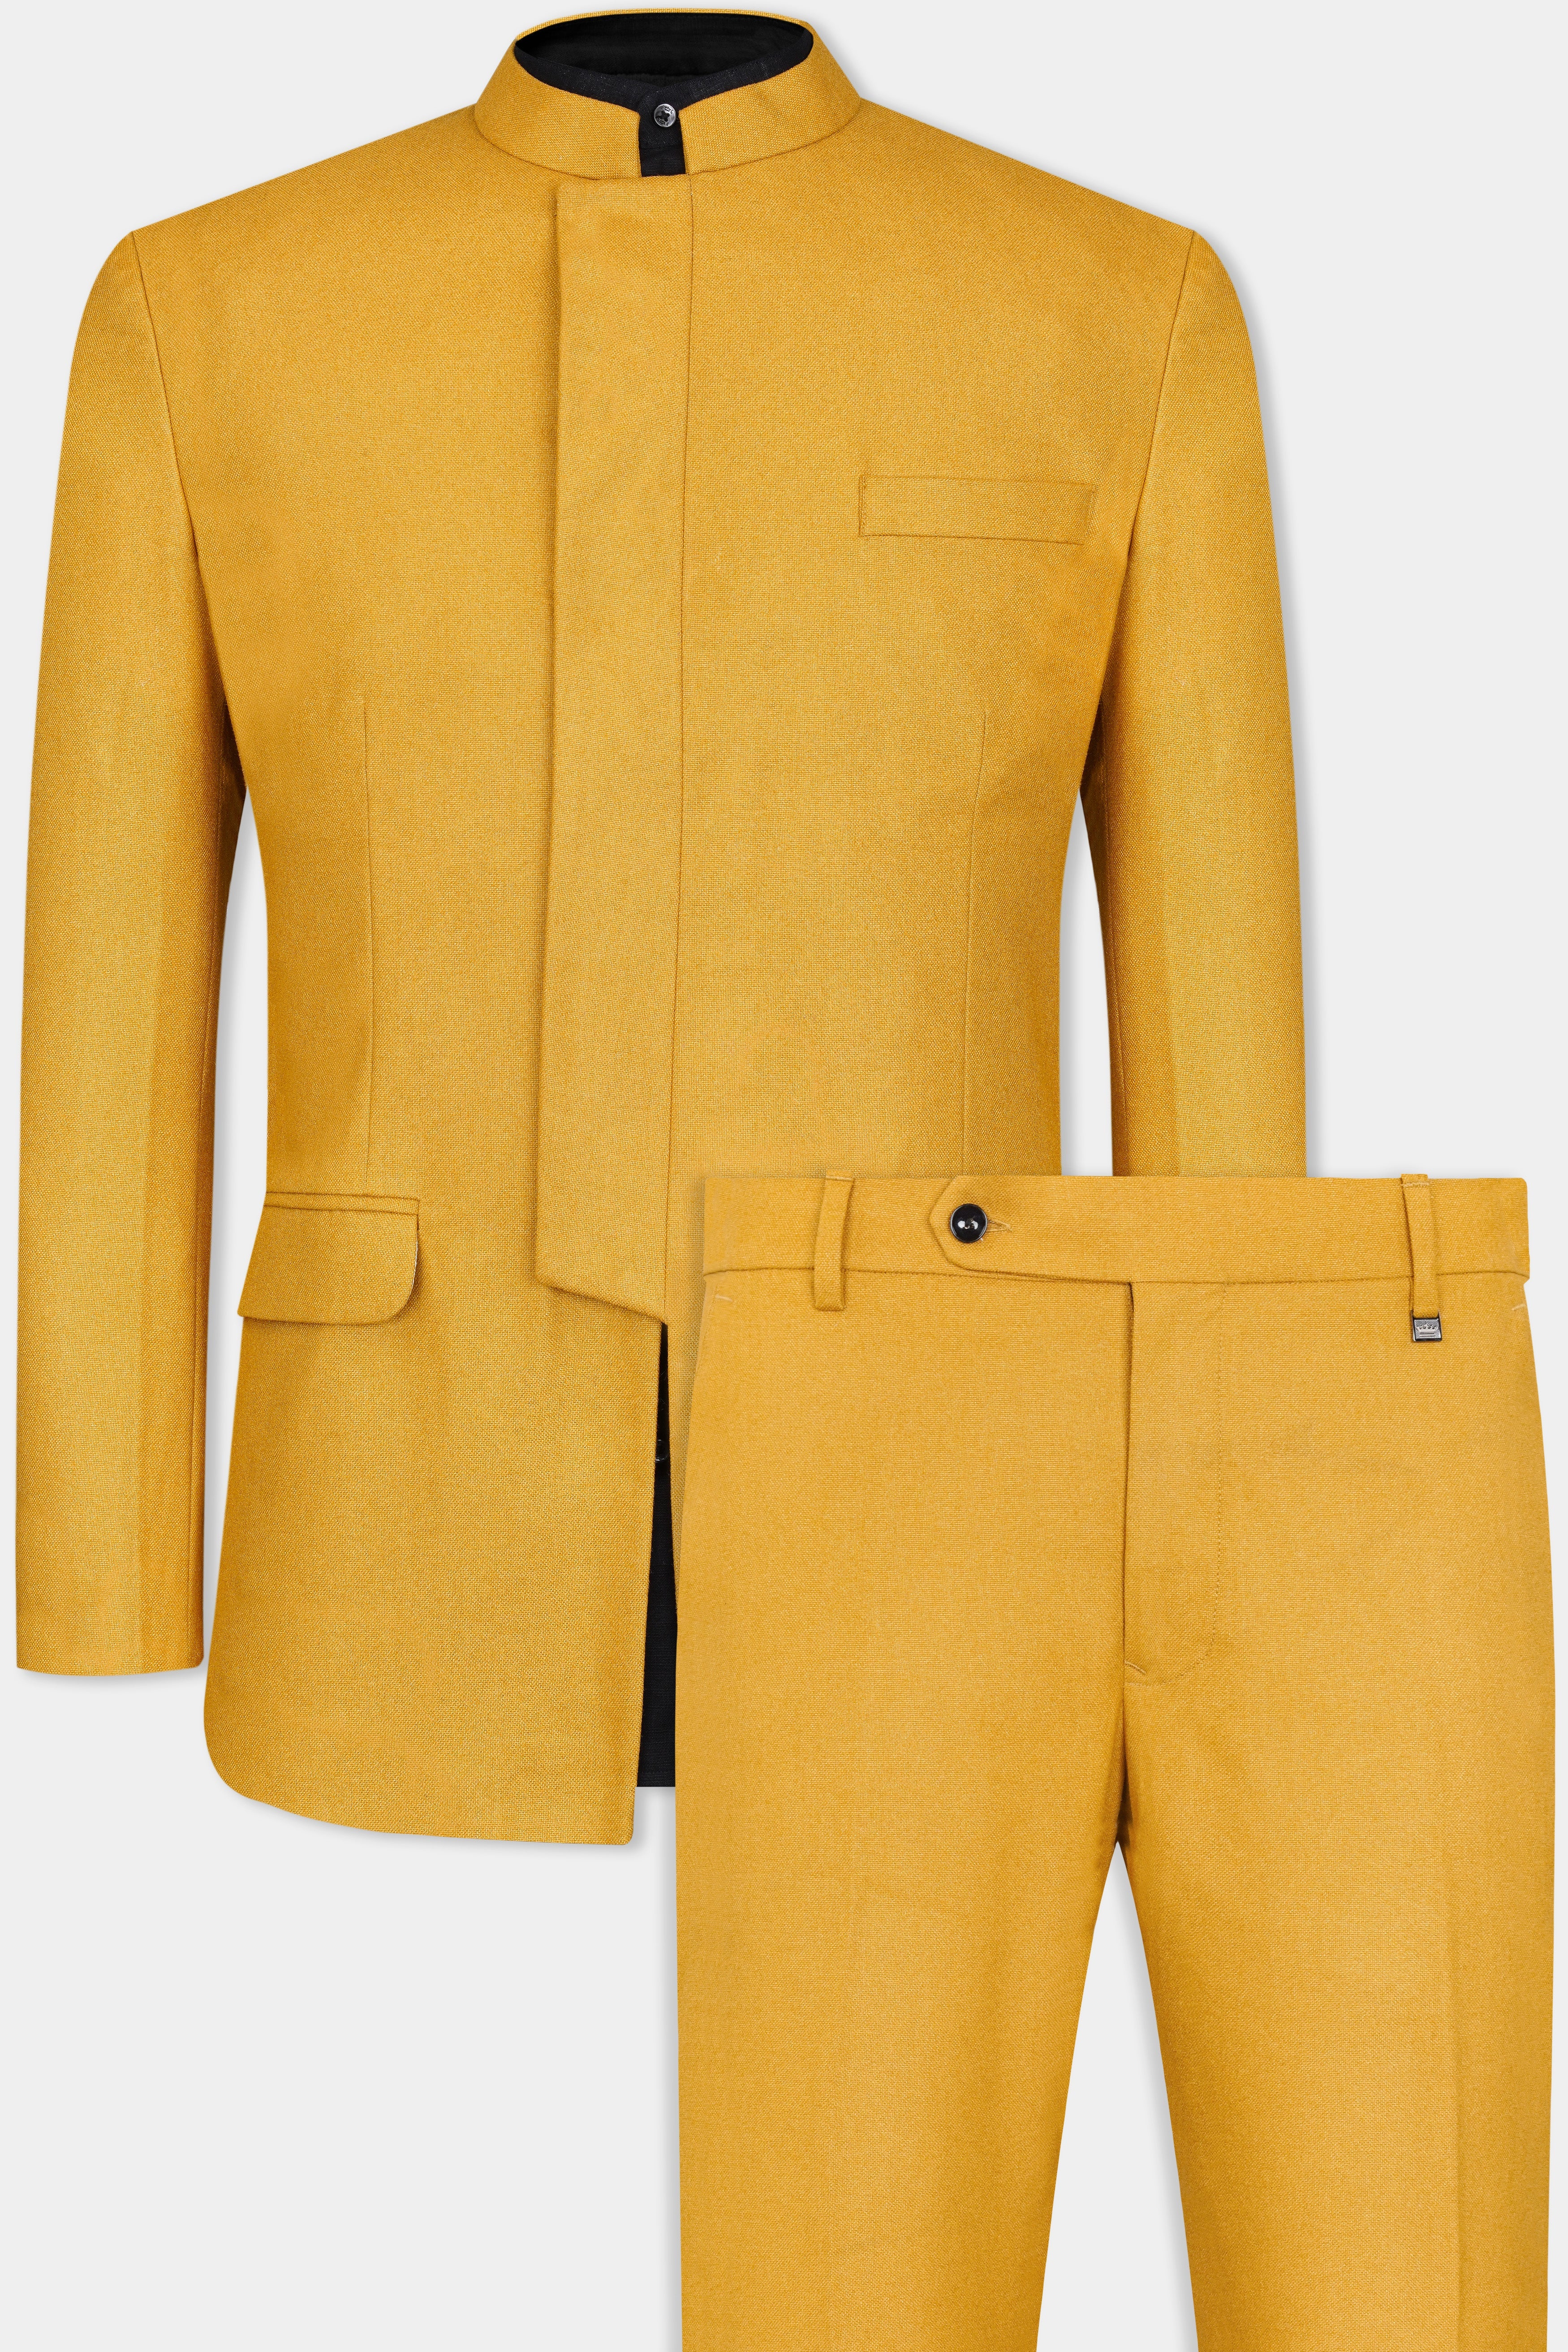 Amber Yellow Wool Rich Bandhgala Designer Suit ST3103-BG-D392-36, ST3103-BG-D392-38, ST3103-BG-D392-40, ST3103-BG-D392-42, ST3103-BG-D392-44, ST3103-BG-D392-46, ST3103-BG-D392-48, ST3103-BG-D392-50, ST3103-BG-D392-52, ST3103-BG-D392-54, ST3103-BG-D392-56, ST3103-BG-D392-58, ST3103-BG-D392-60